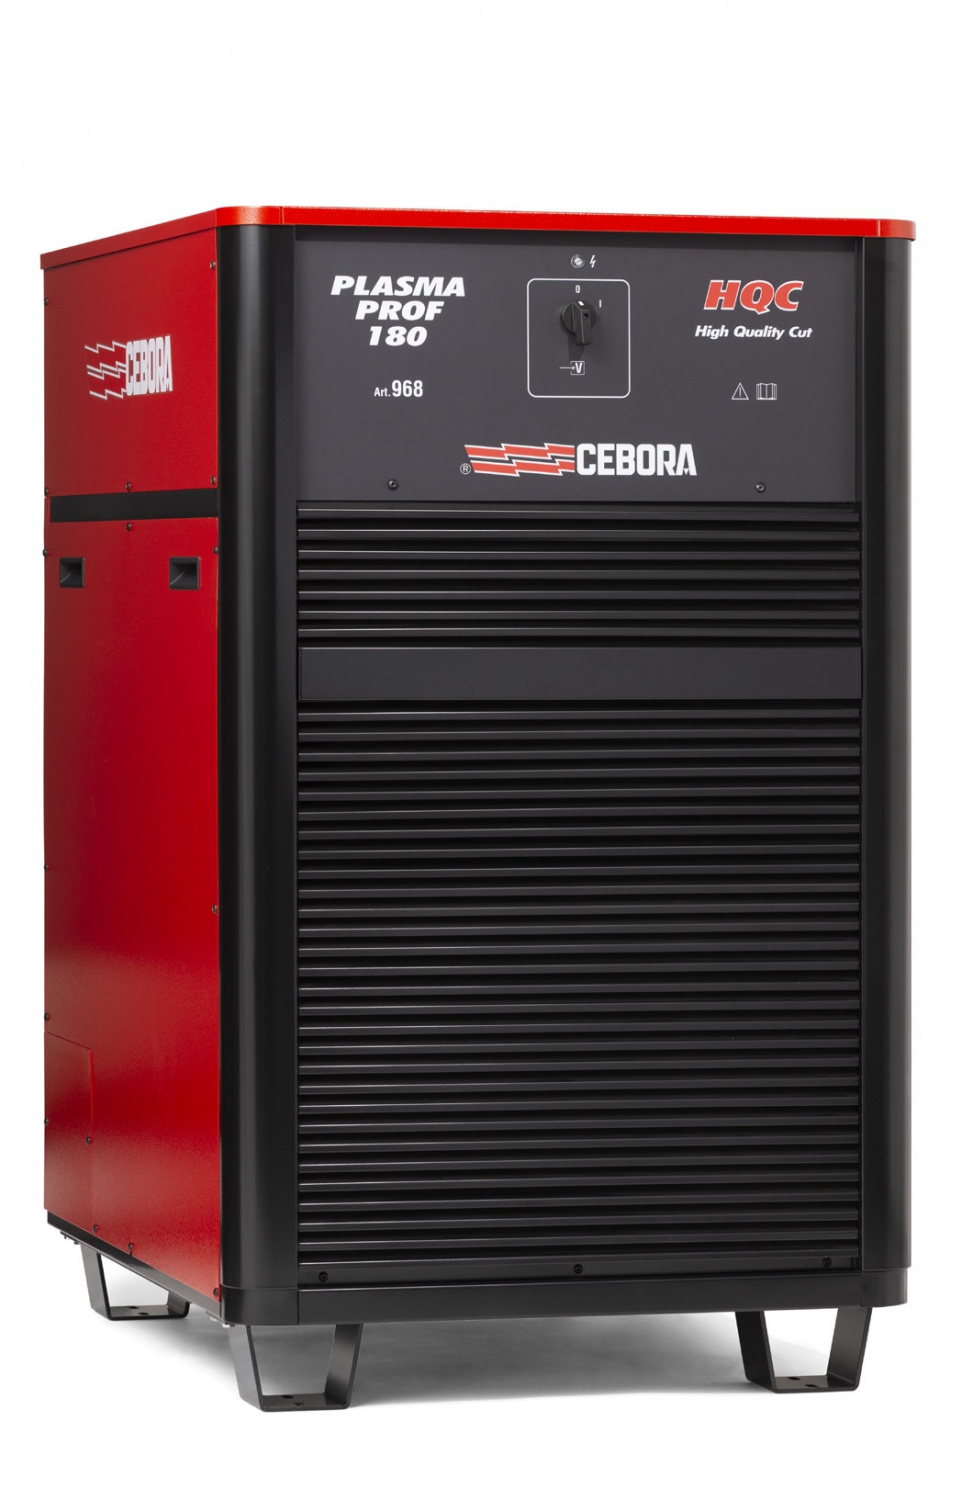 Источник плазменной резки Cebora PLASMA PROF 180 HQC+ полный комплект для РОБОТА с ручной консолью